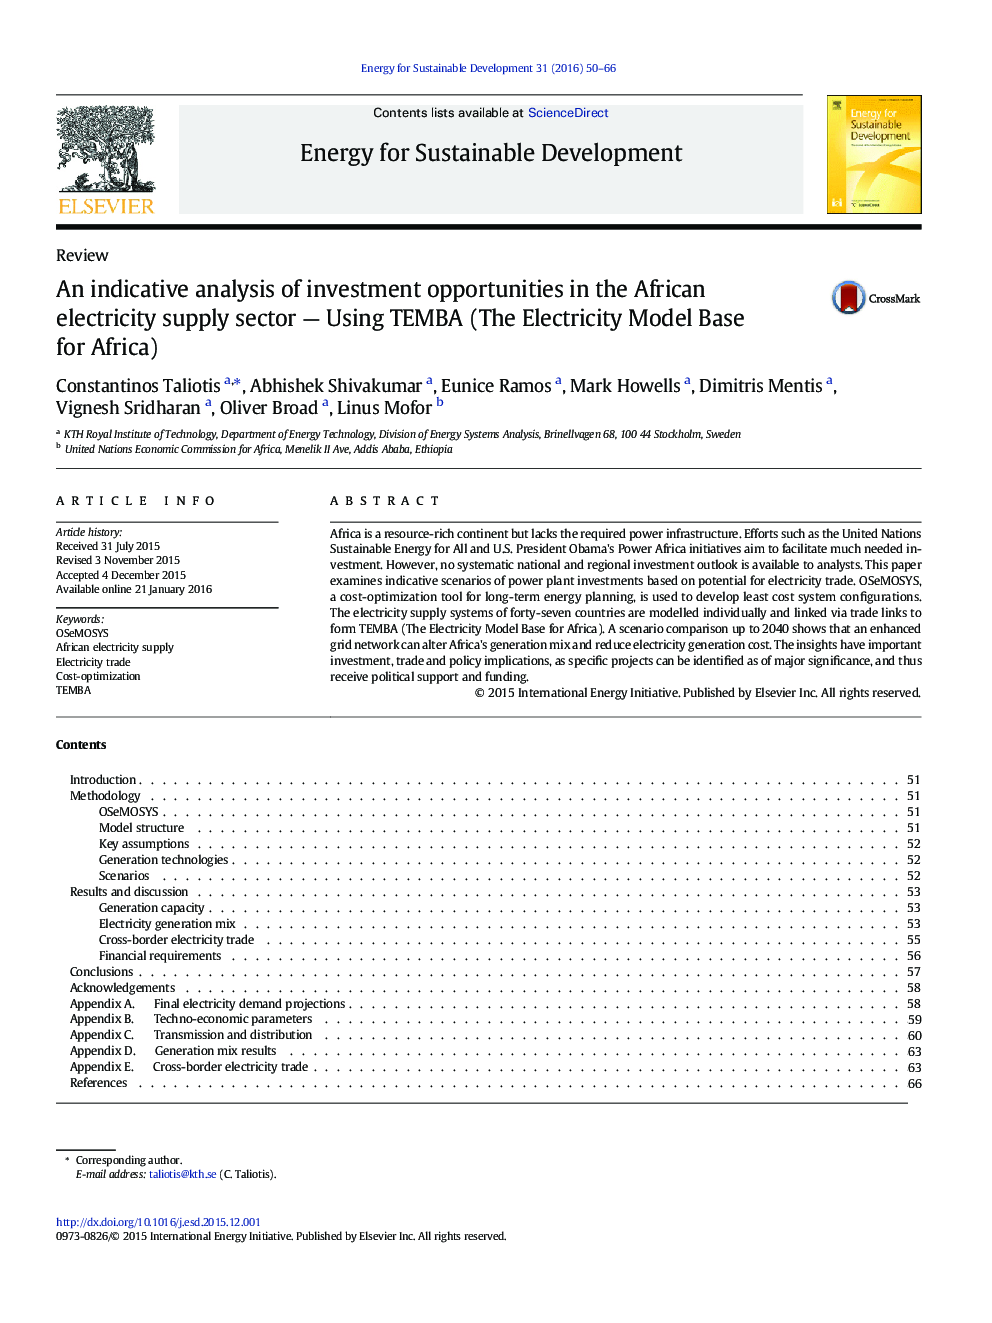 تجزیه و تحلیل حاکی از فرصت های سرمایه گذاری در بخش تامین انرژی برق آفریقا - استفاده از TEMBA (مدل پایه برق برای آفریقا)